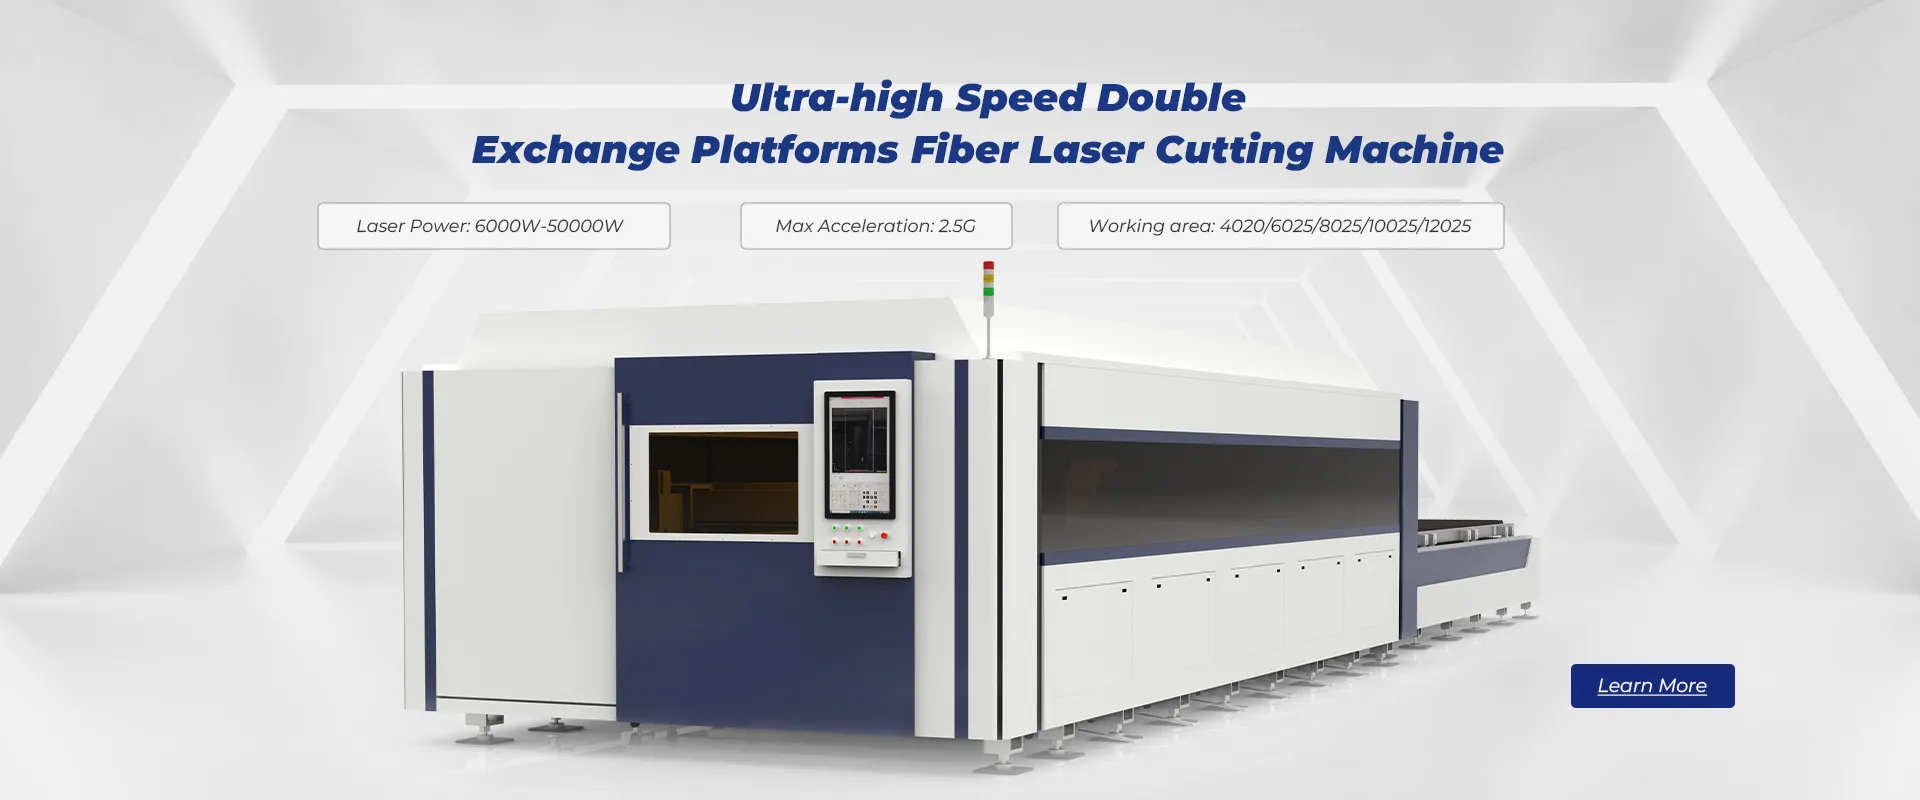 Ultra-high Speed Double Exchange Platforms Fiber Laser Cutting Machine